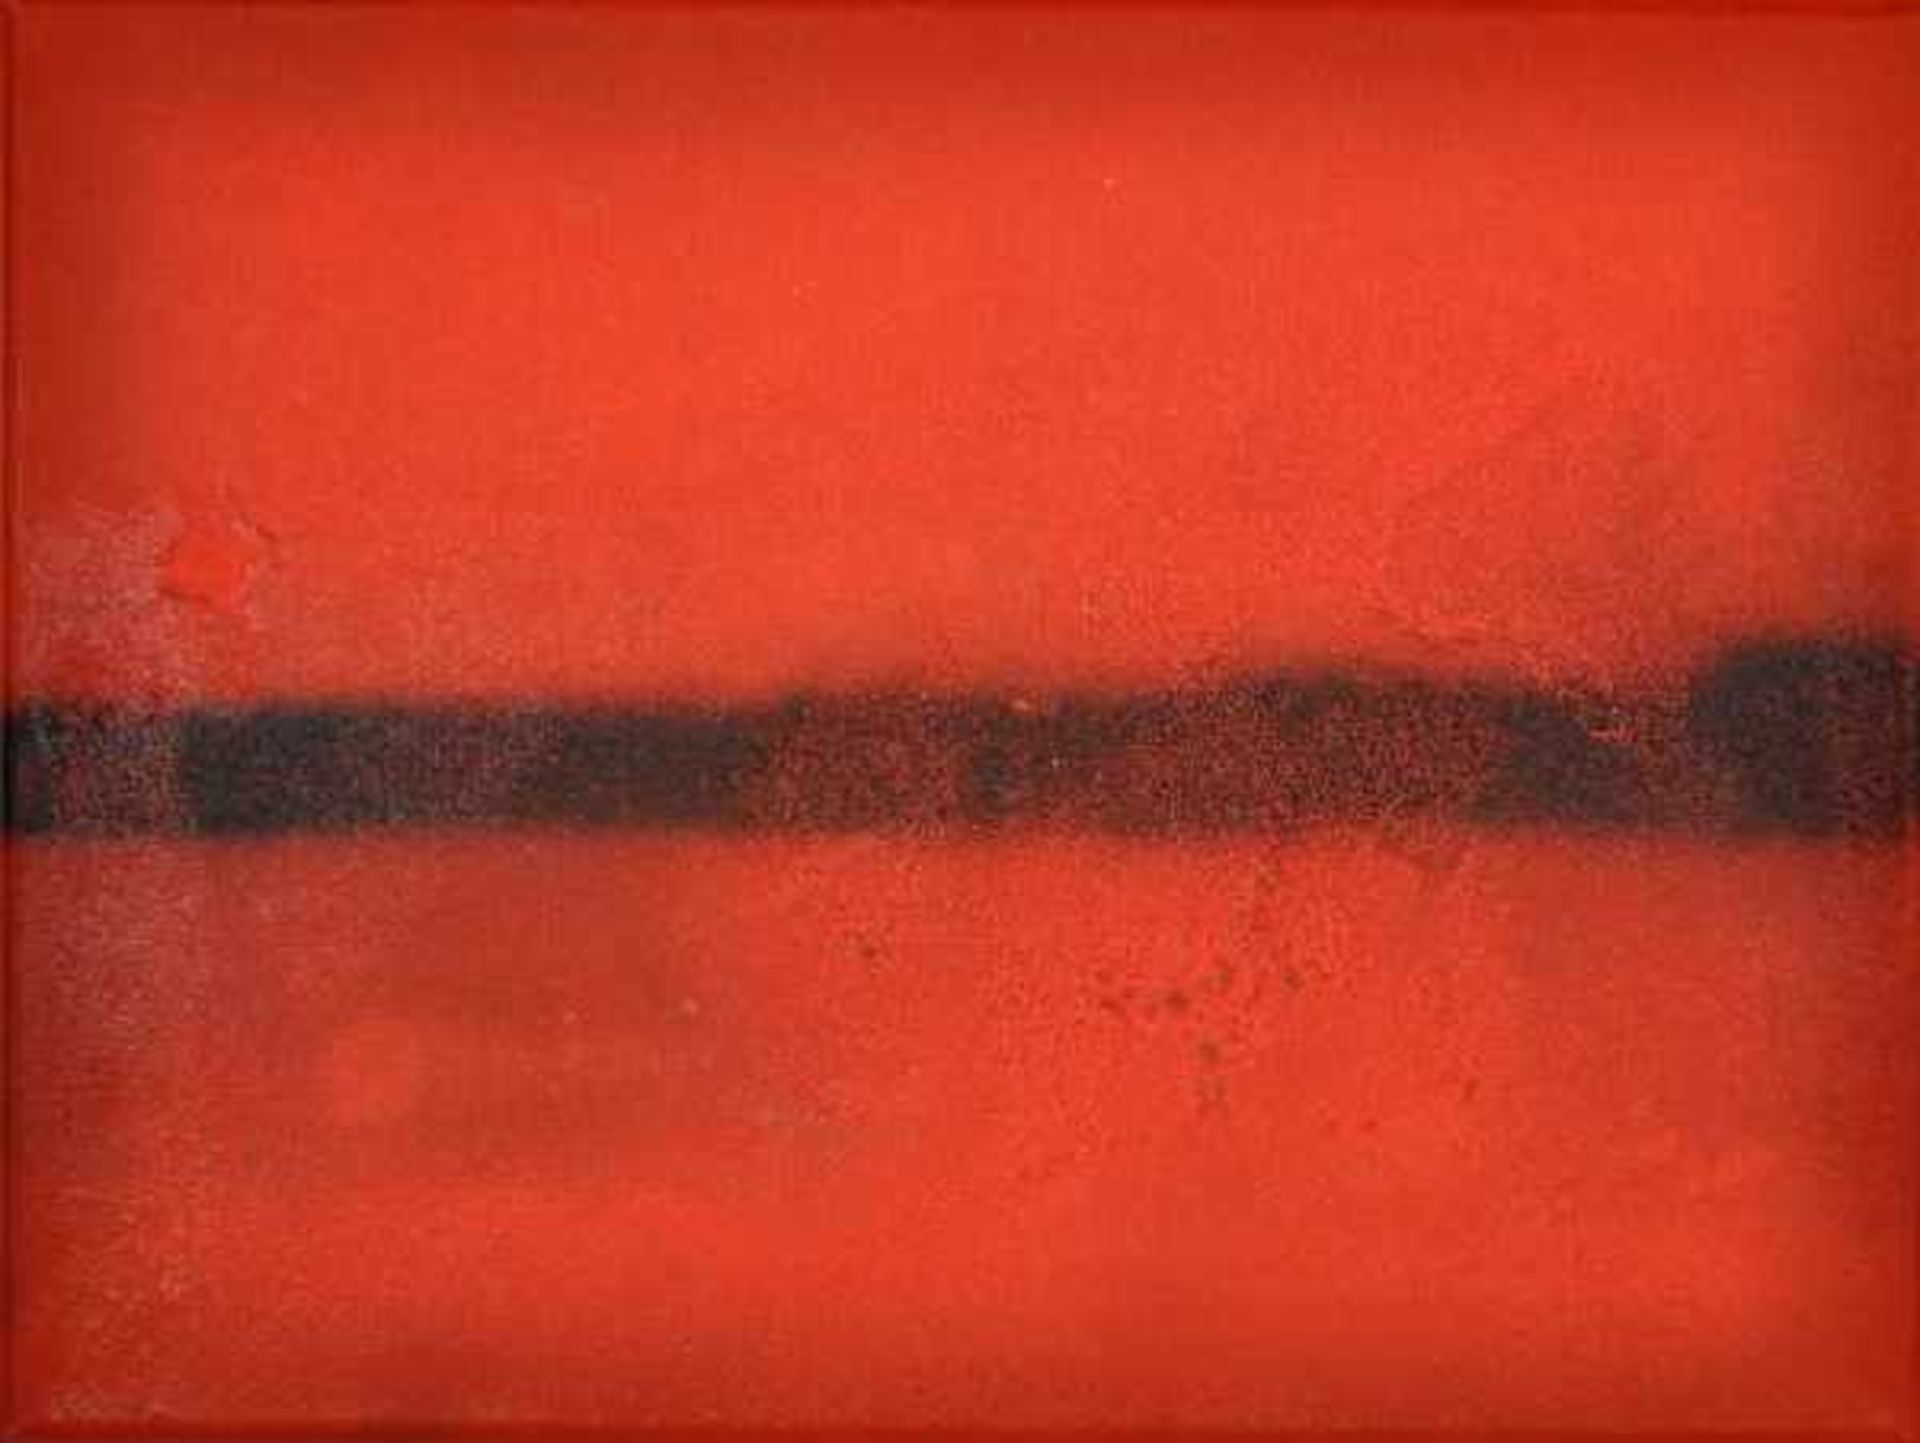 PIENE Otto (1928 Laasphe - 2014 Berlin) "Es brennt", rückseitig auf der Leinwand signiert, datiert